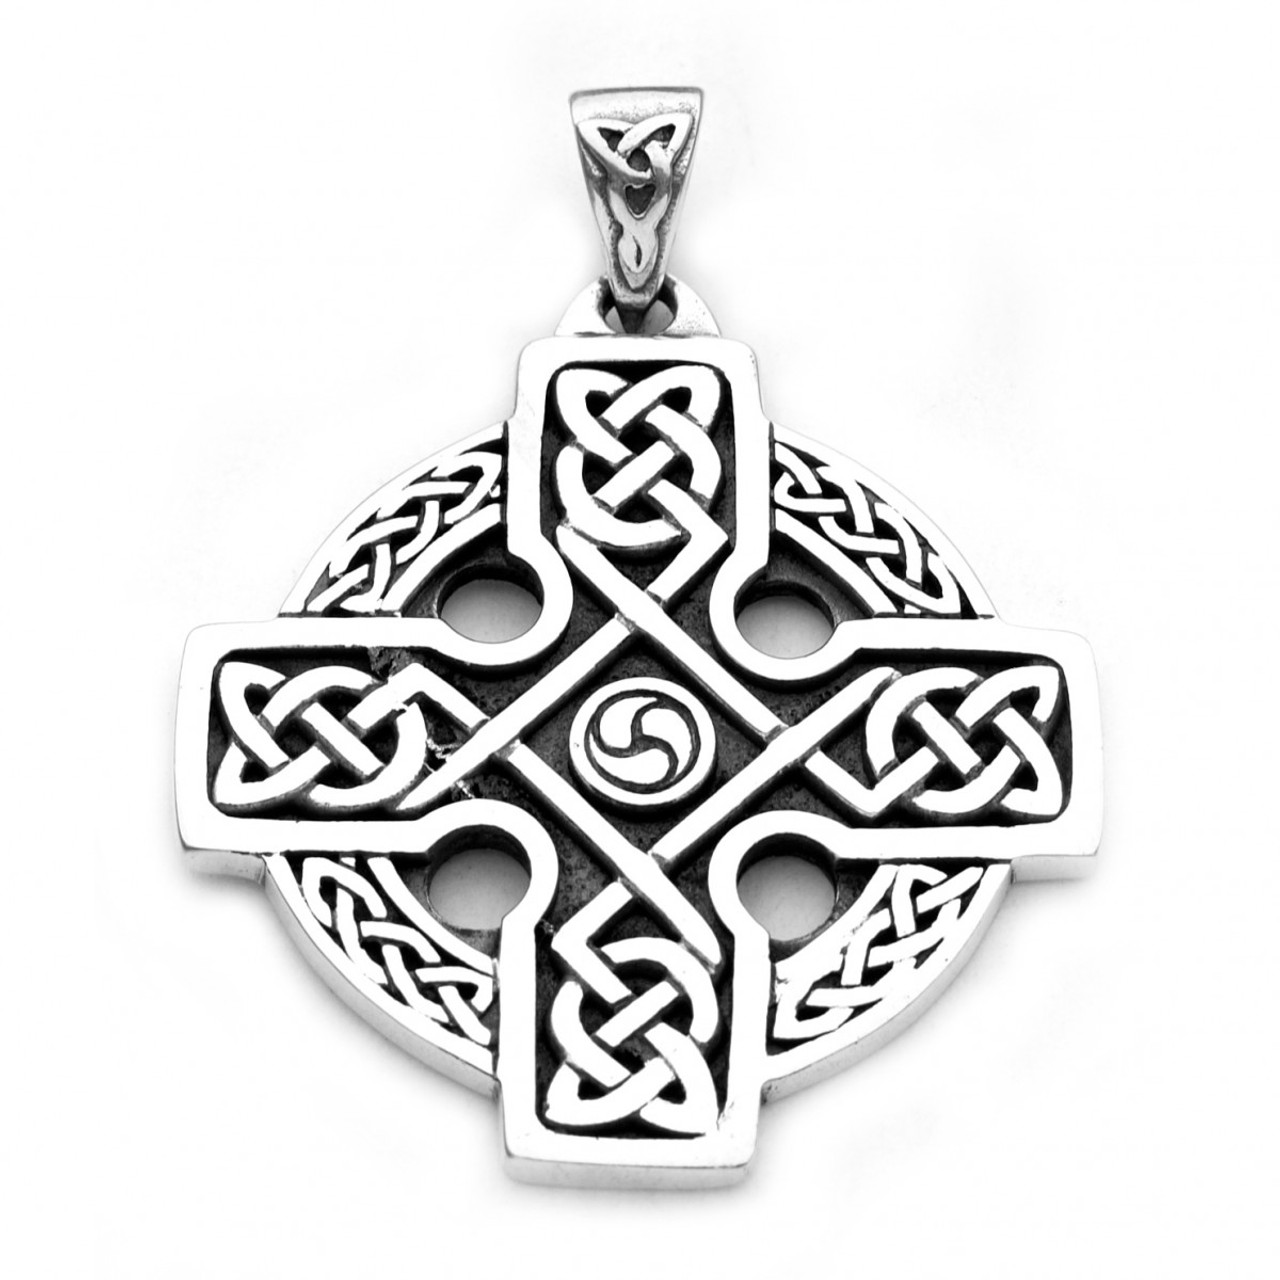 Равносторонний крест. Славянские символы Кельтский крест. Кельтский крест языческий. Кельтский языческий крест амулет. Славянский оберег Кельтский крест.